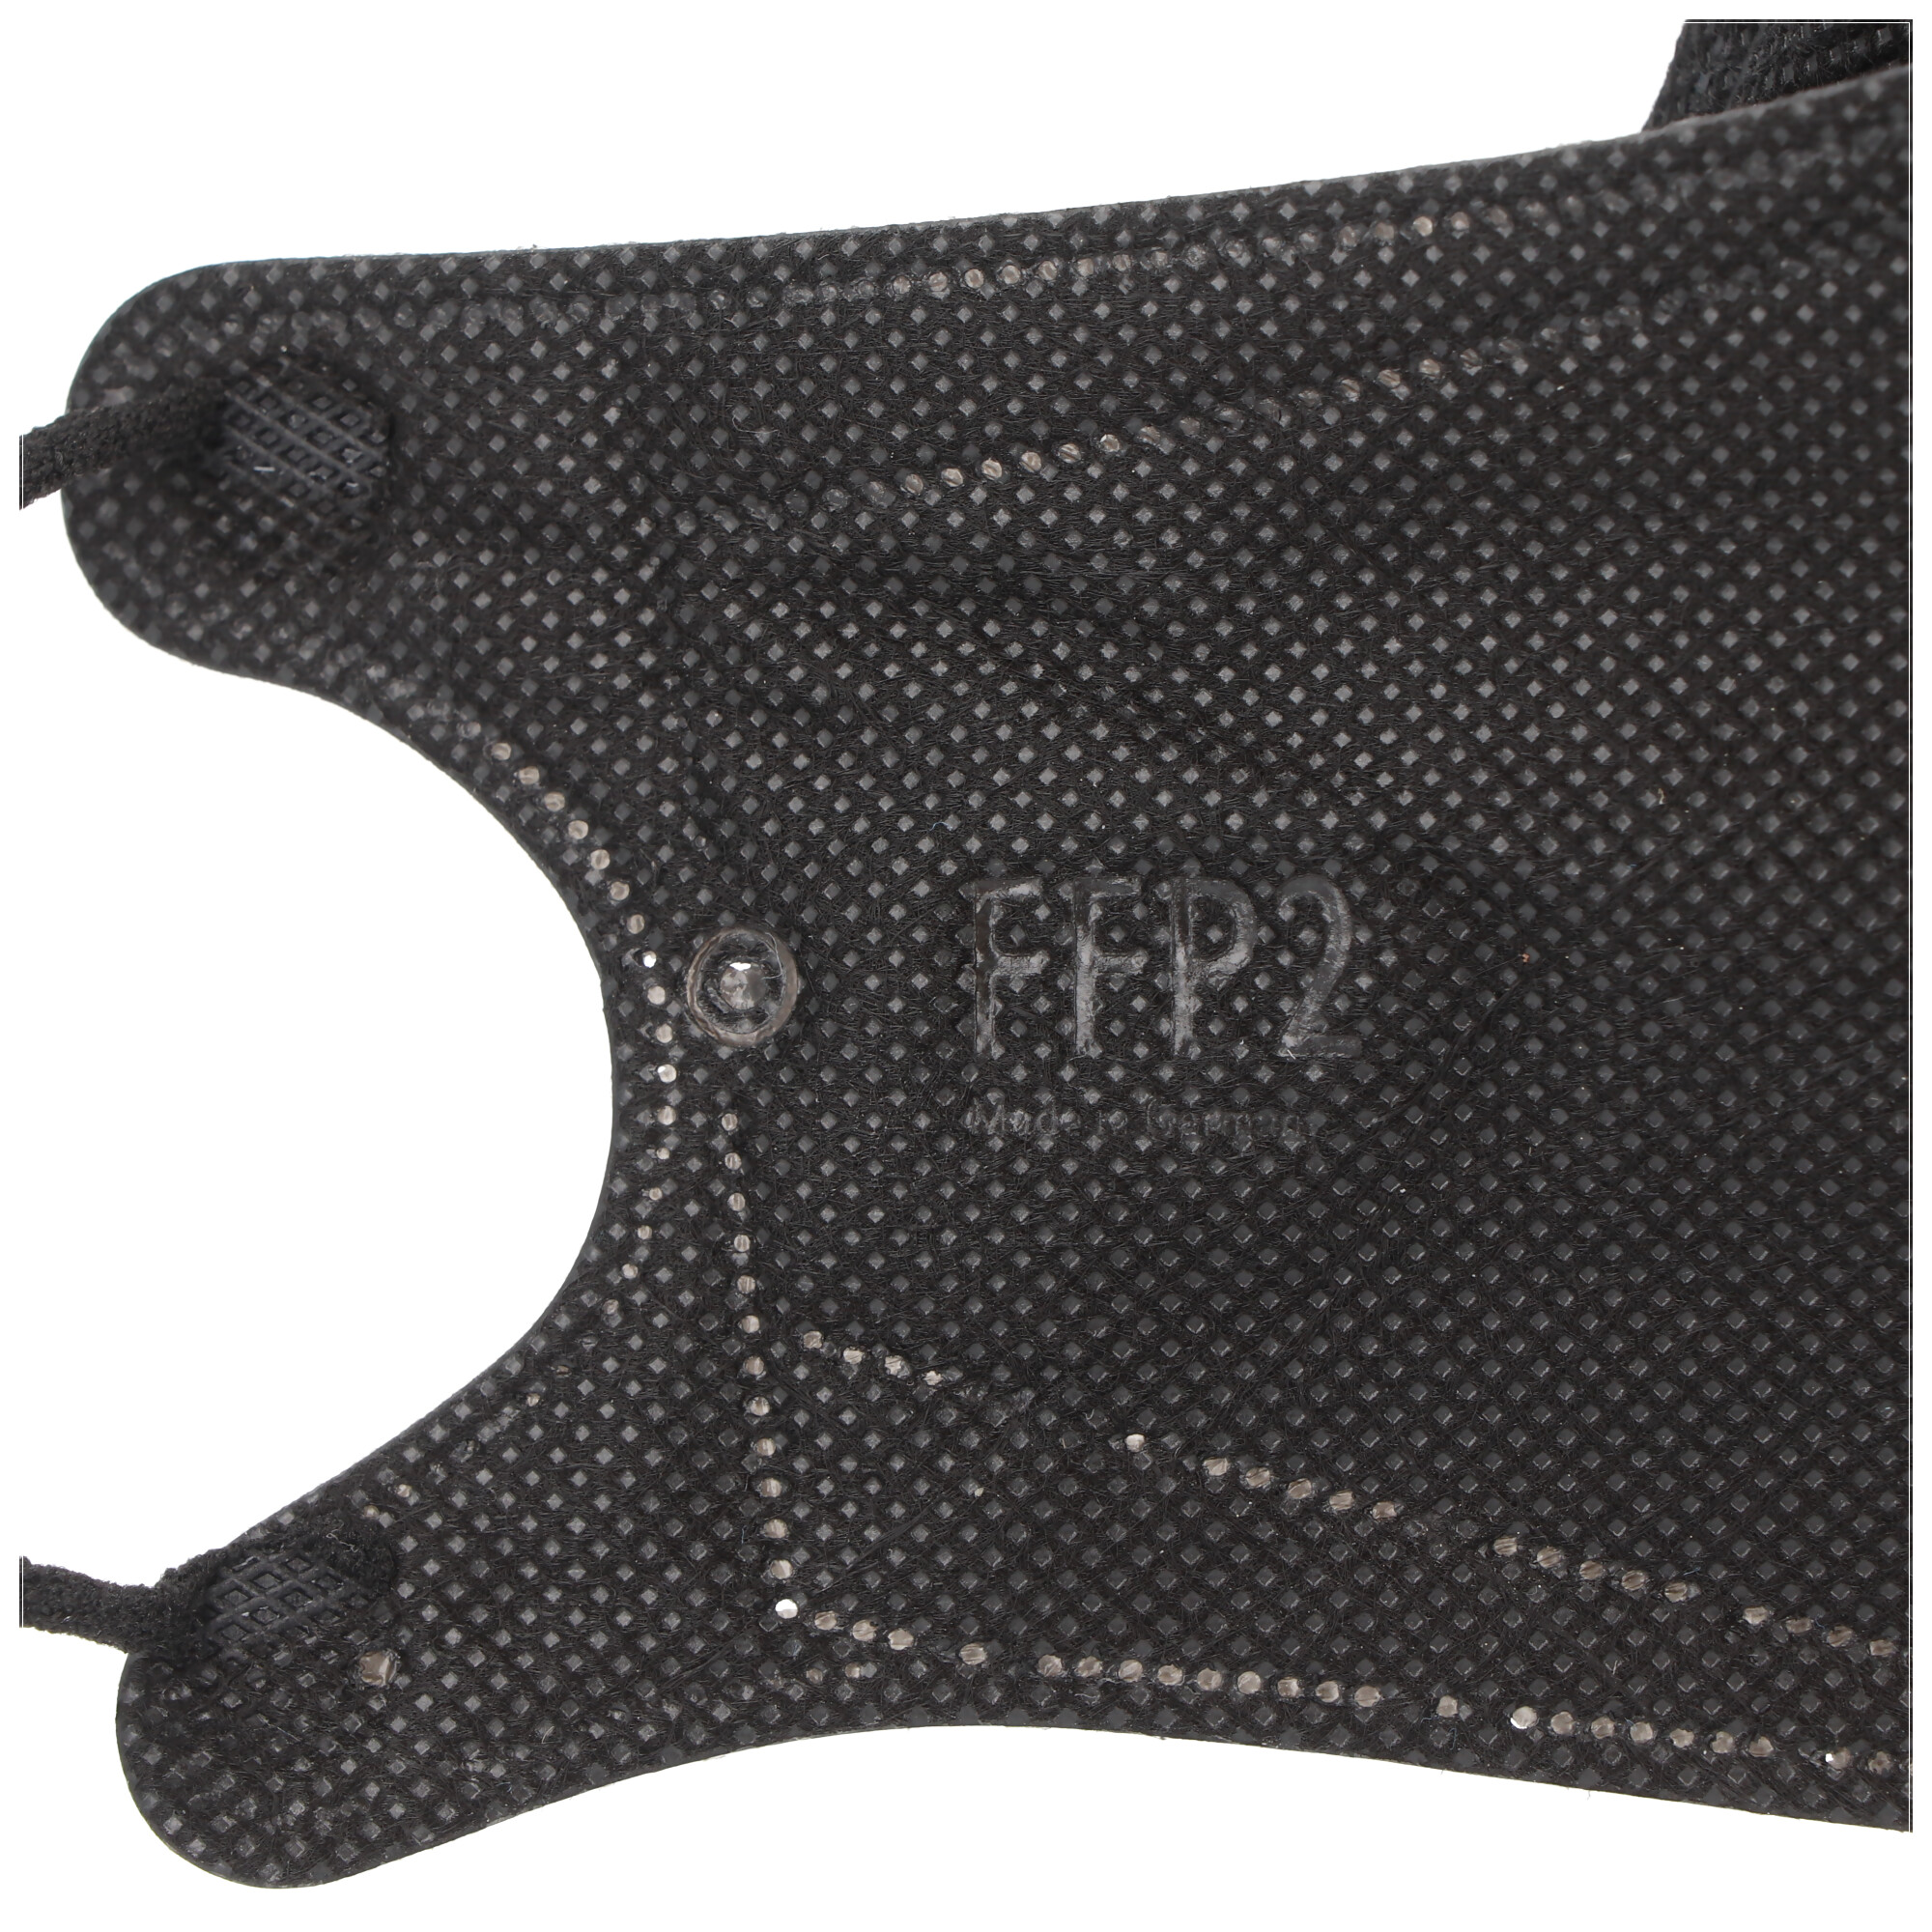 10 Stück FFP2 Maske Schwarz, zertifiziert nach DIN EN149:2001+A1:2009, partikelfiltrierende Halbmaske, FFP2 Schutzmaske